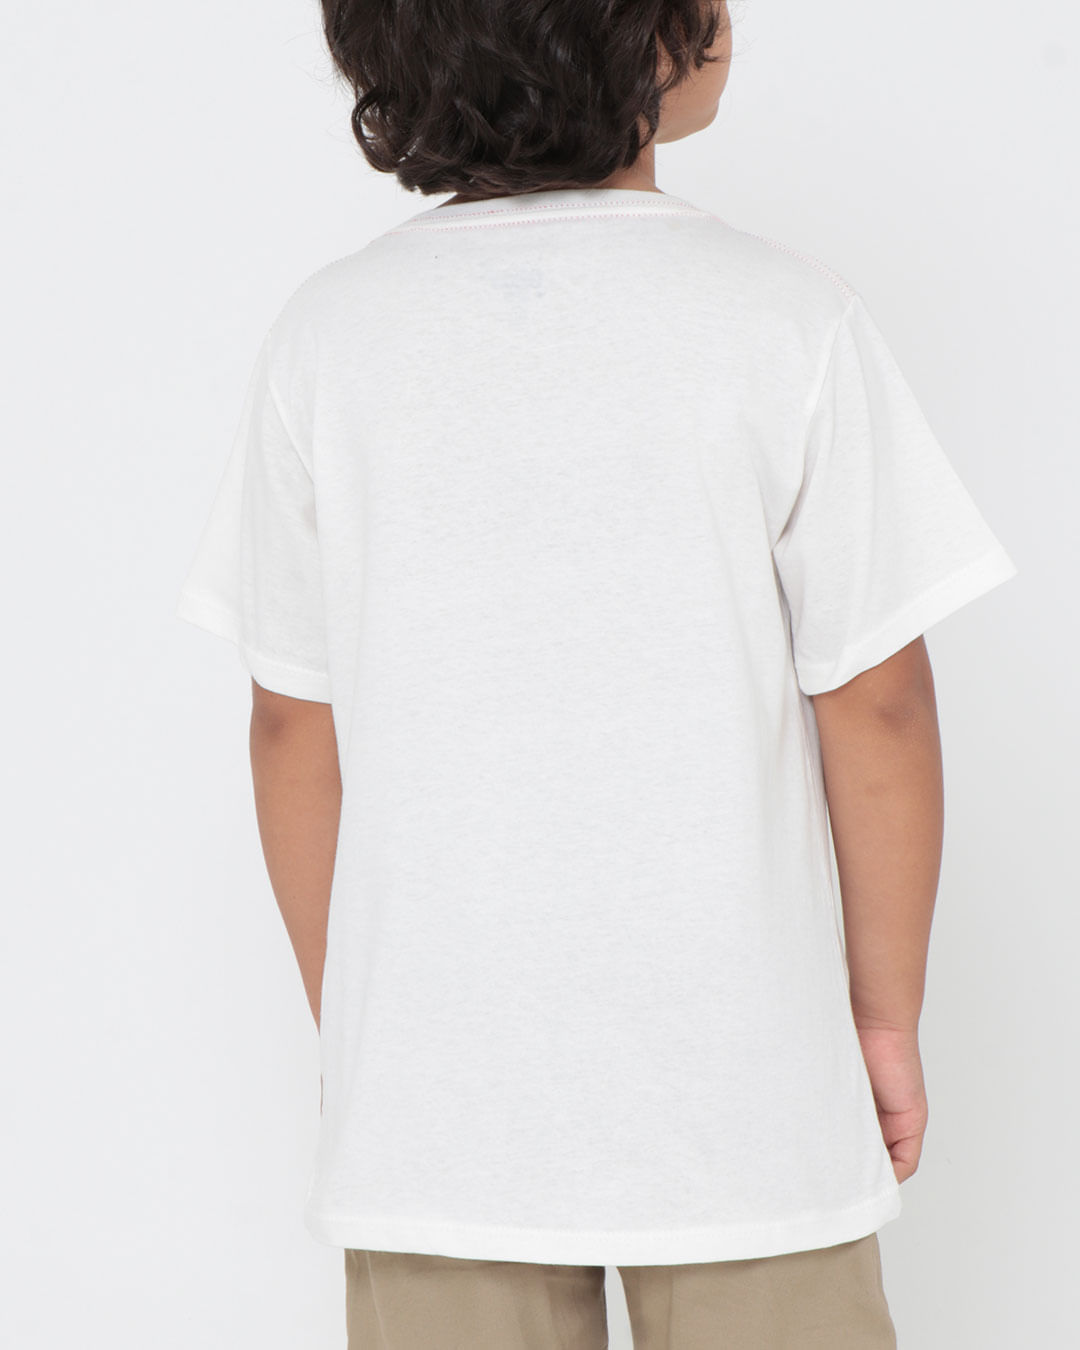 Camiseta-Mc-06210044-M410---Off-White